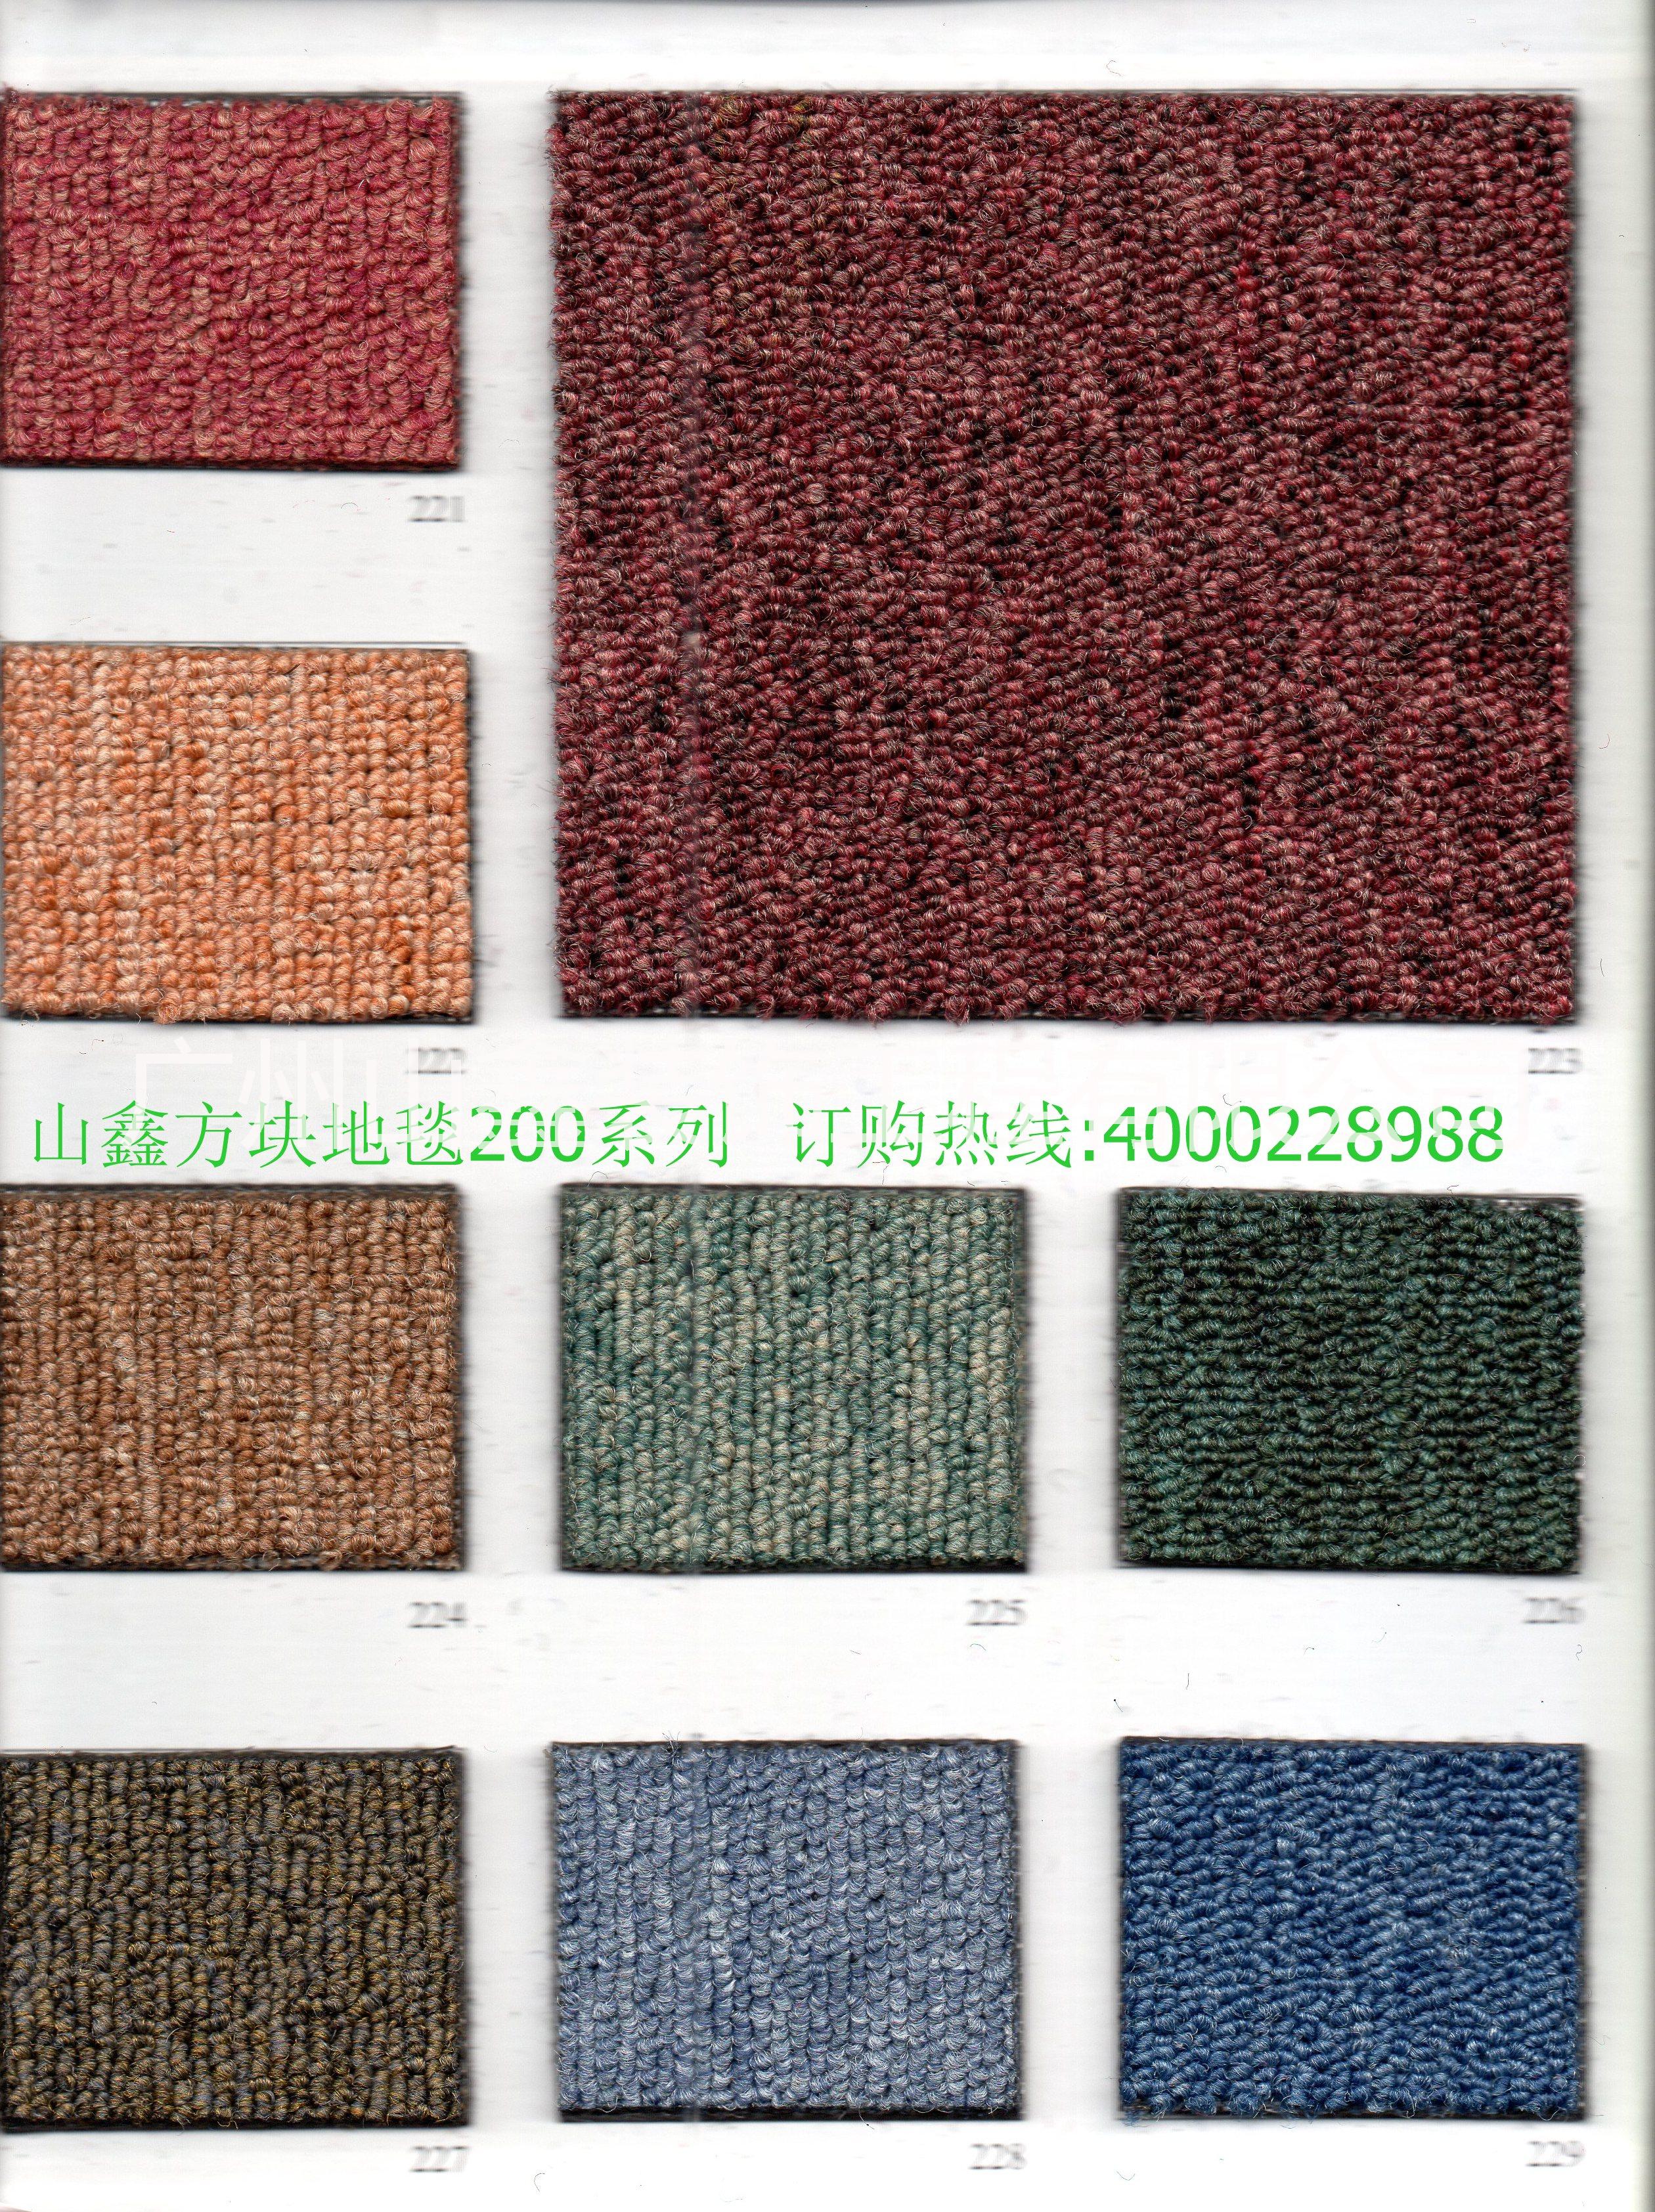 供应广州方块地毯厂价大促销26元/平方图片